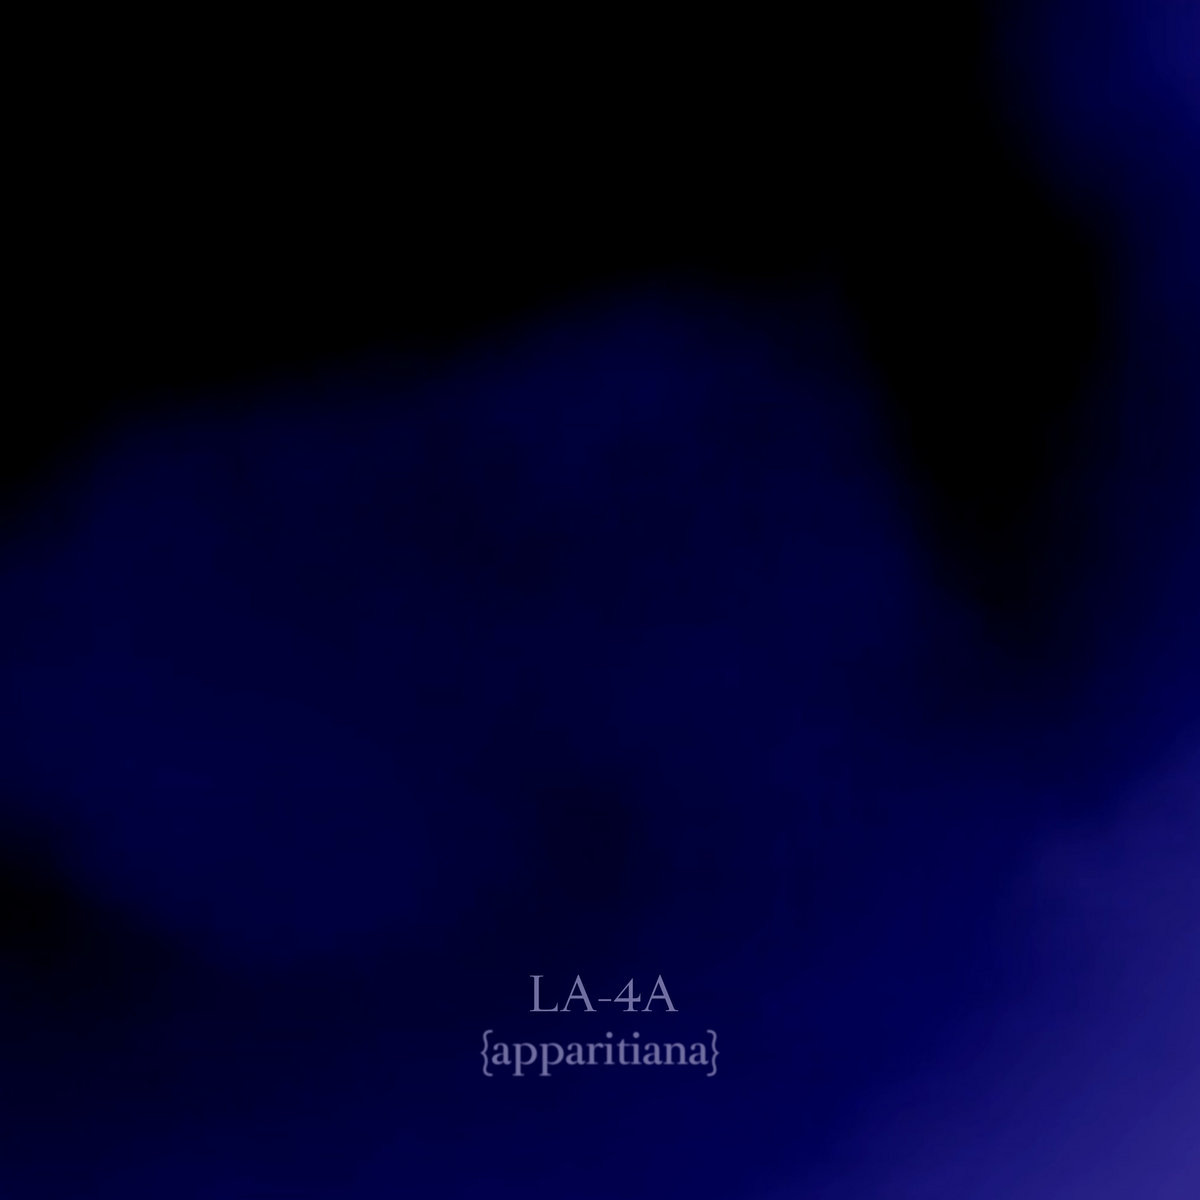 album cover for LA-4A Apparitiana